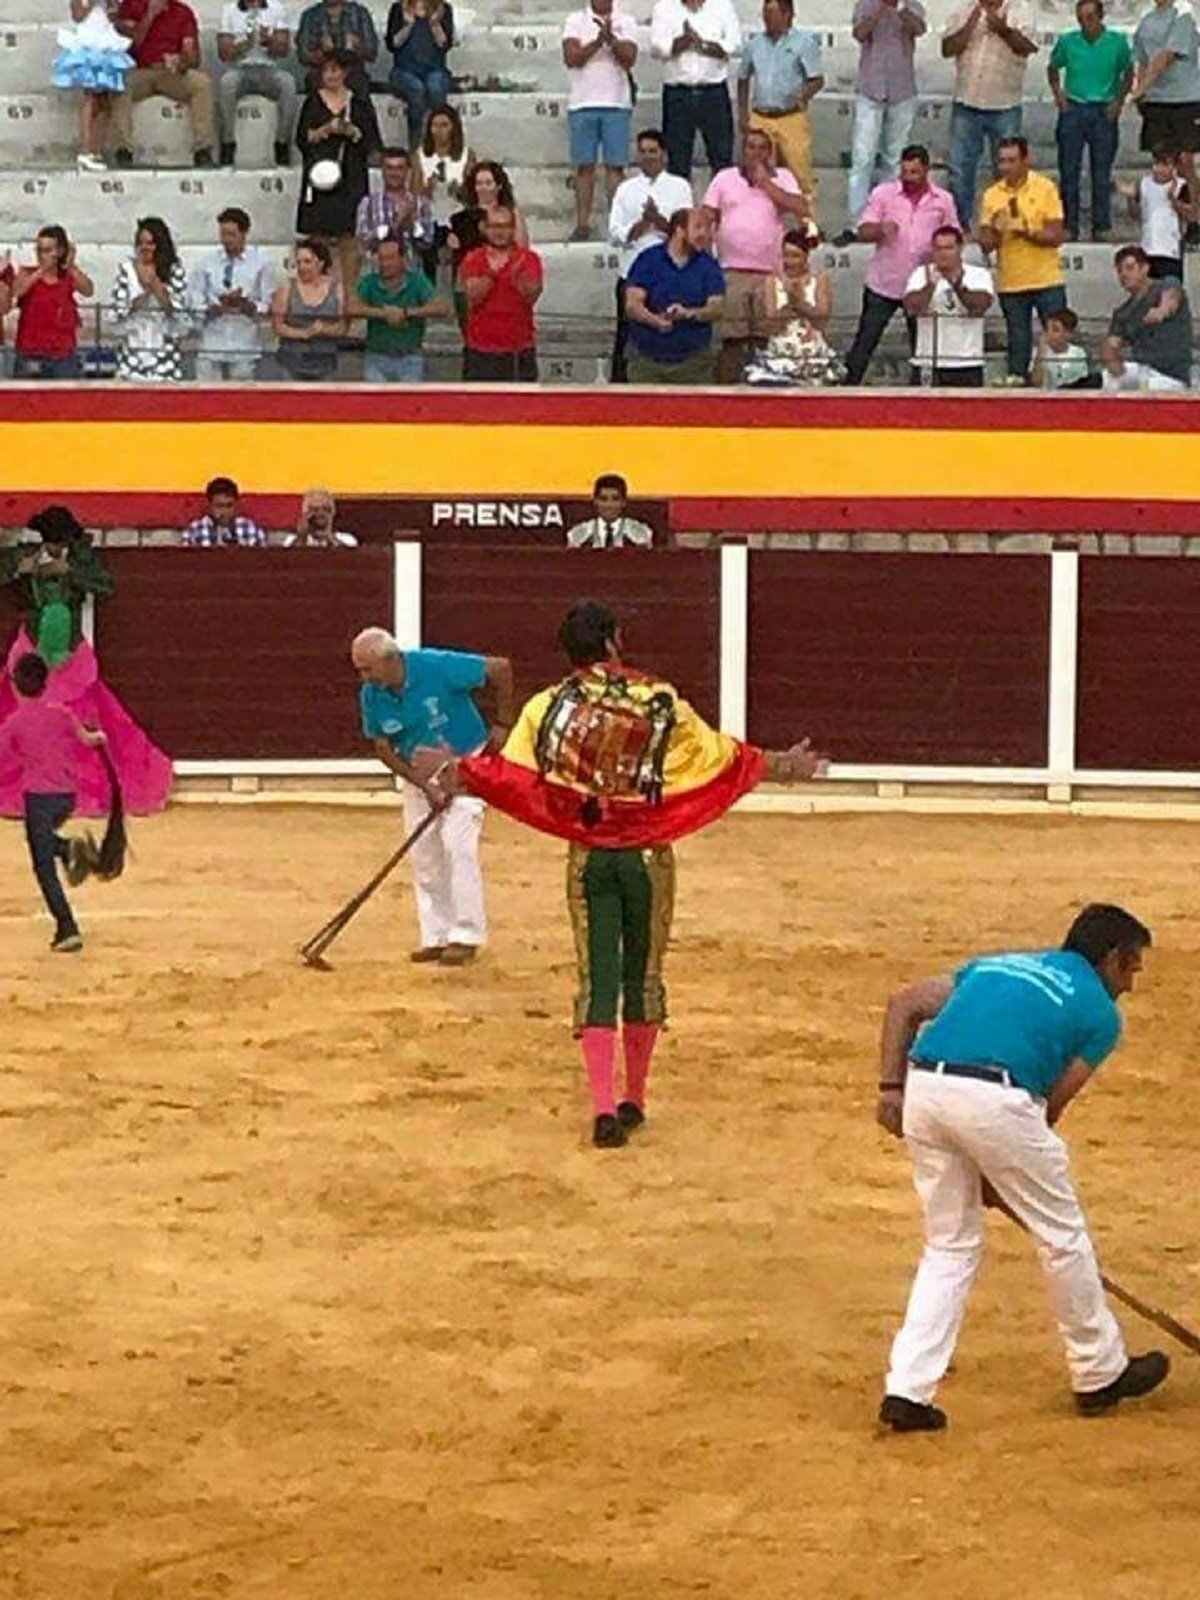 Indignación en la red por un torero que luce una bandera franquista